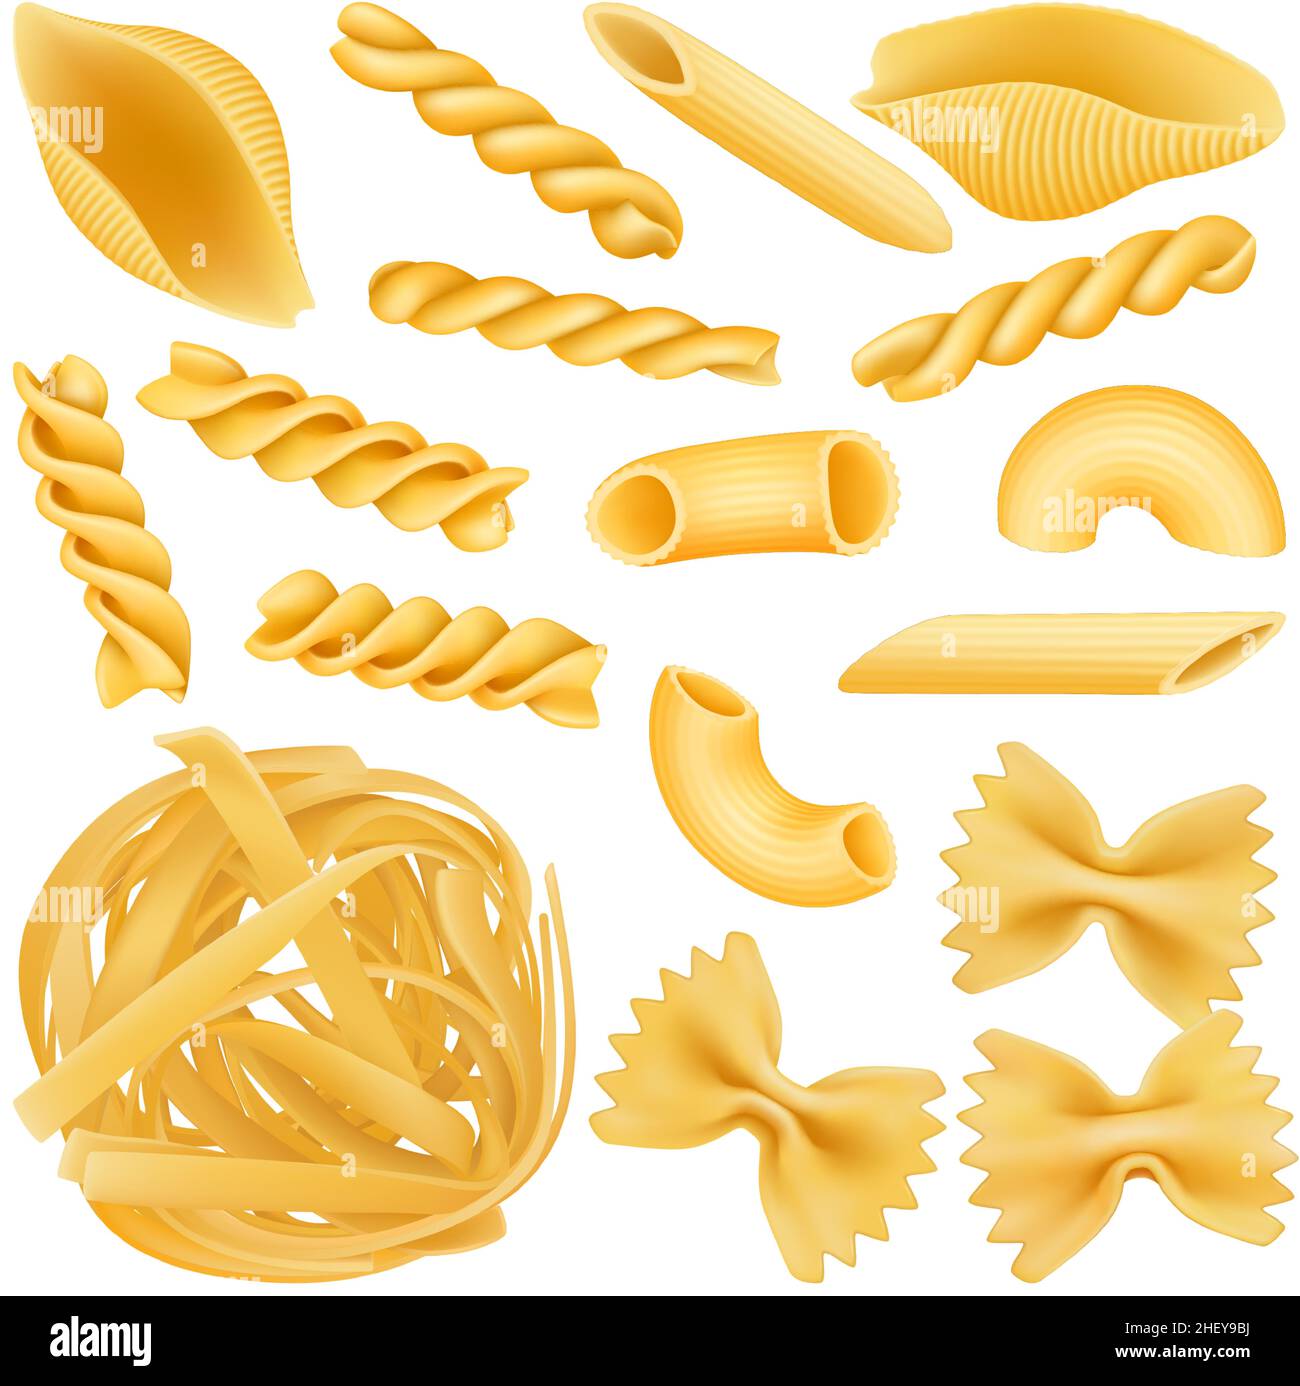 Pasta italiana realistica, fettuccine secche, farfalle e penne. Set di illustrazione vettoriale isolato per macaroni 3D grezzi italiani. Diverse forme di pasta Illustrazione Vettoriale